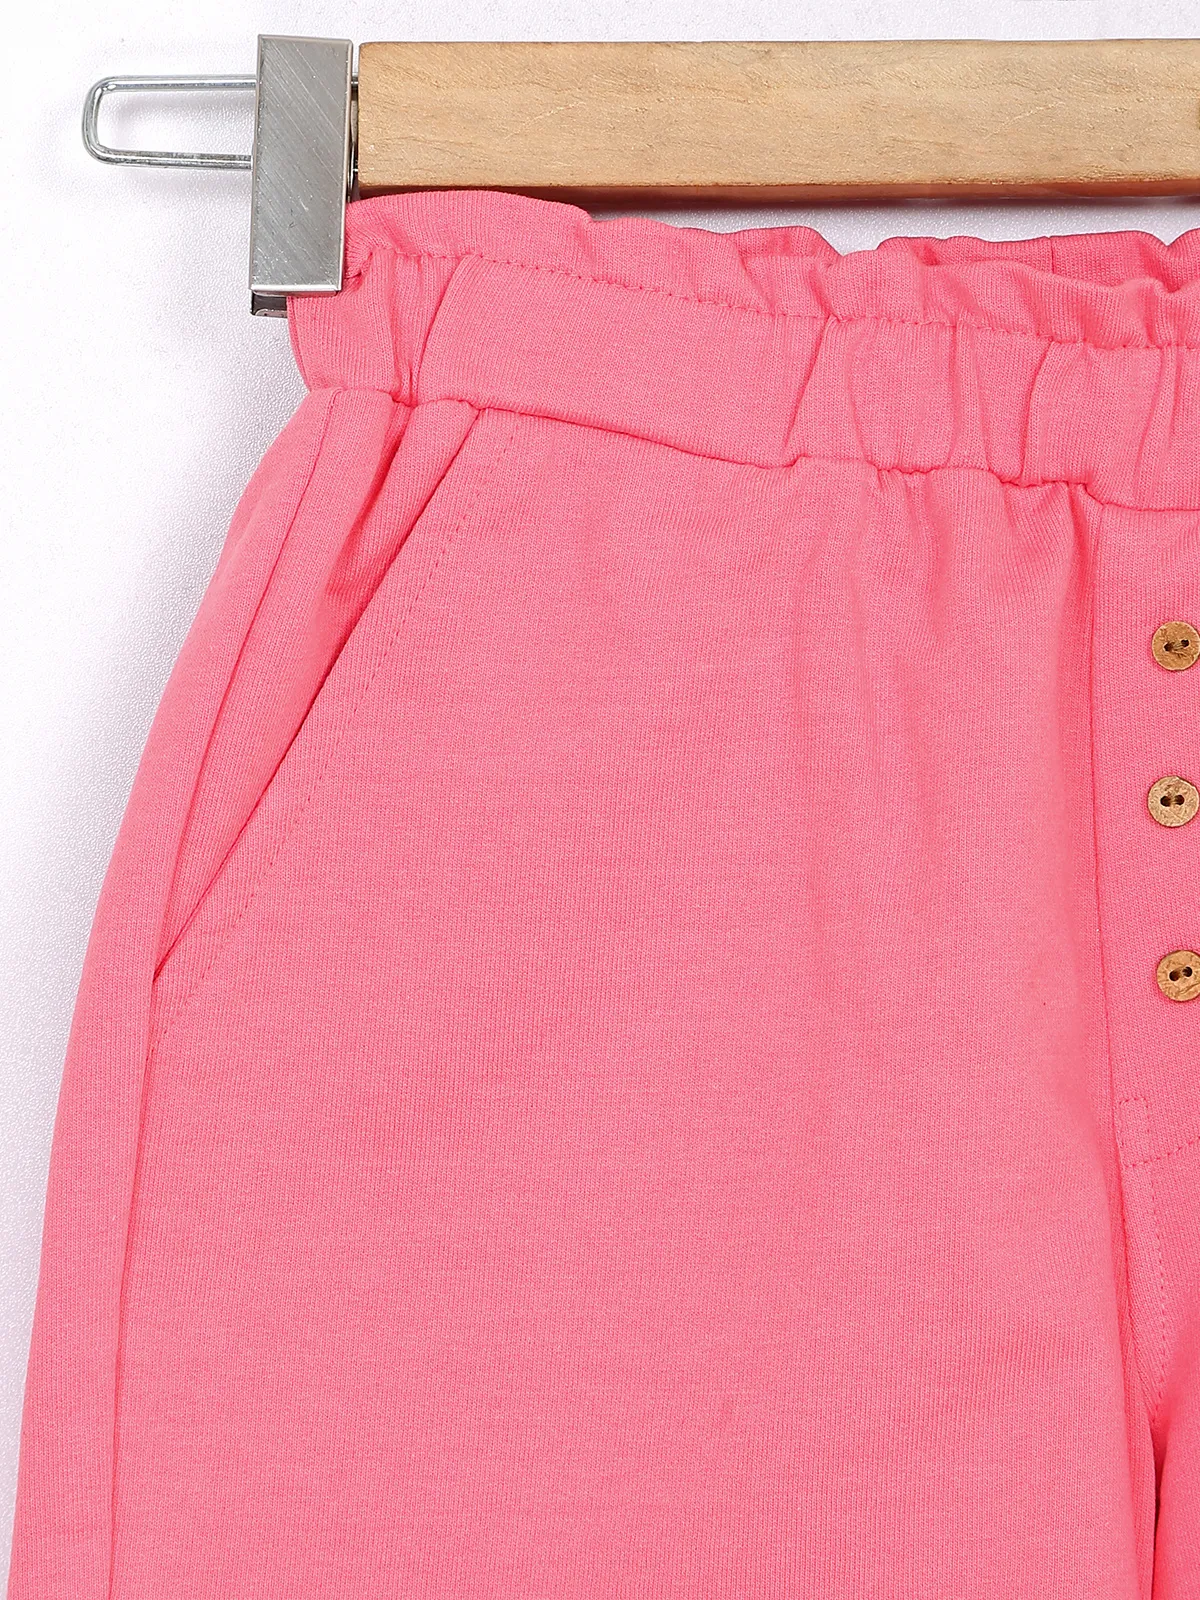 GINI&JONY cotton hot pink shorts